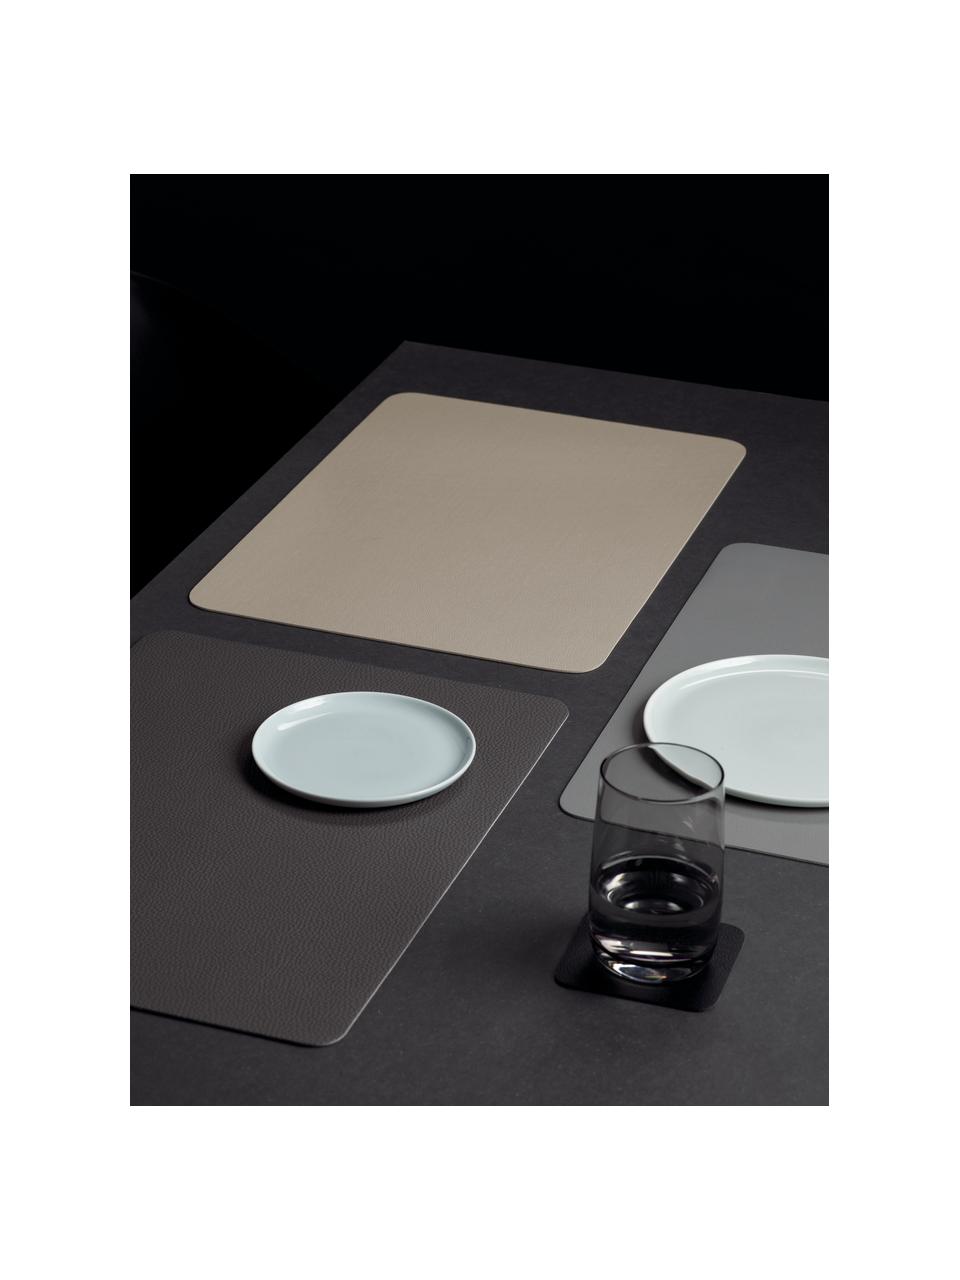 Manteles individuales de cuero sintético Pik, 2 uds., Plástico (PVC), Marrón oscuro, An 33 x L 46 cm